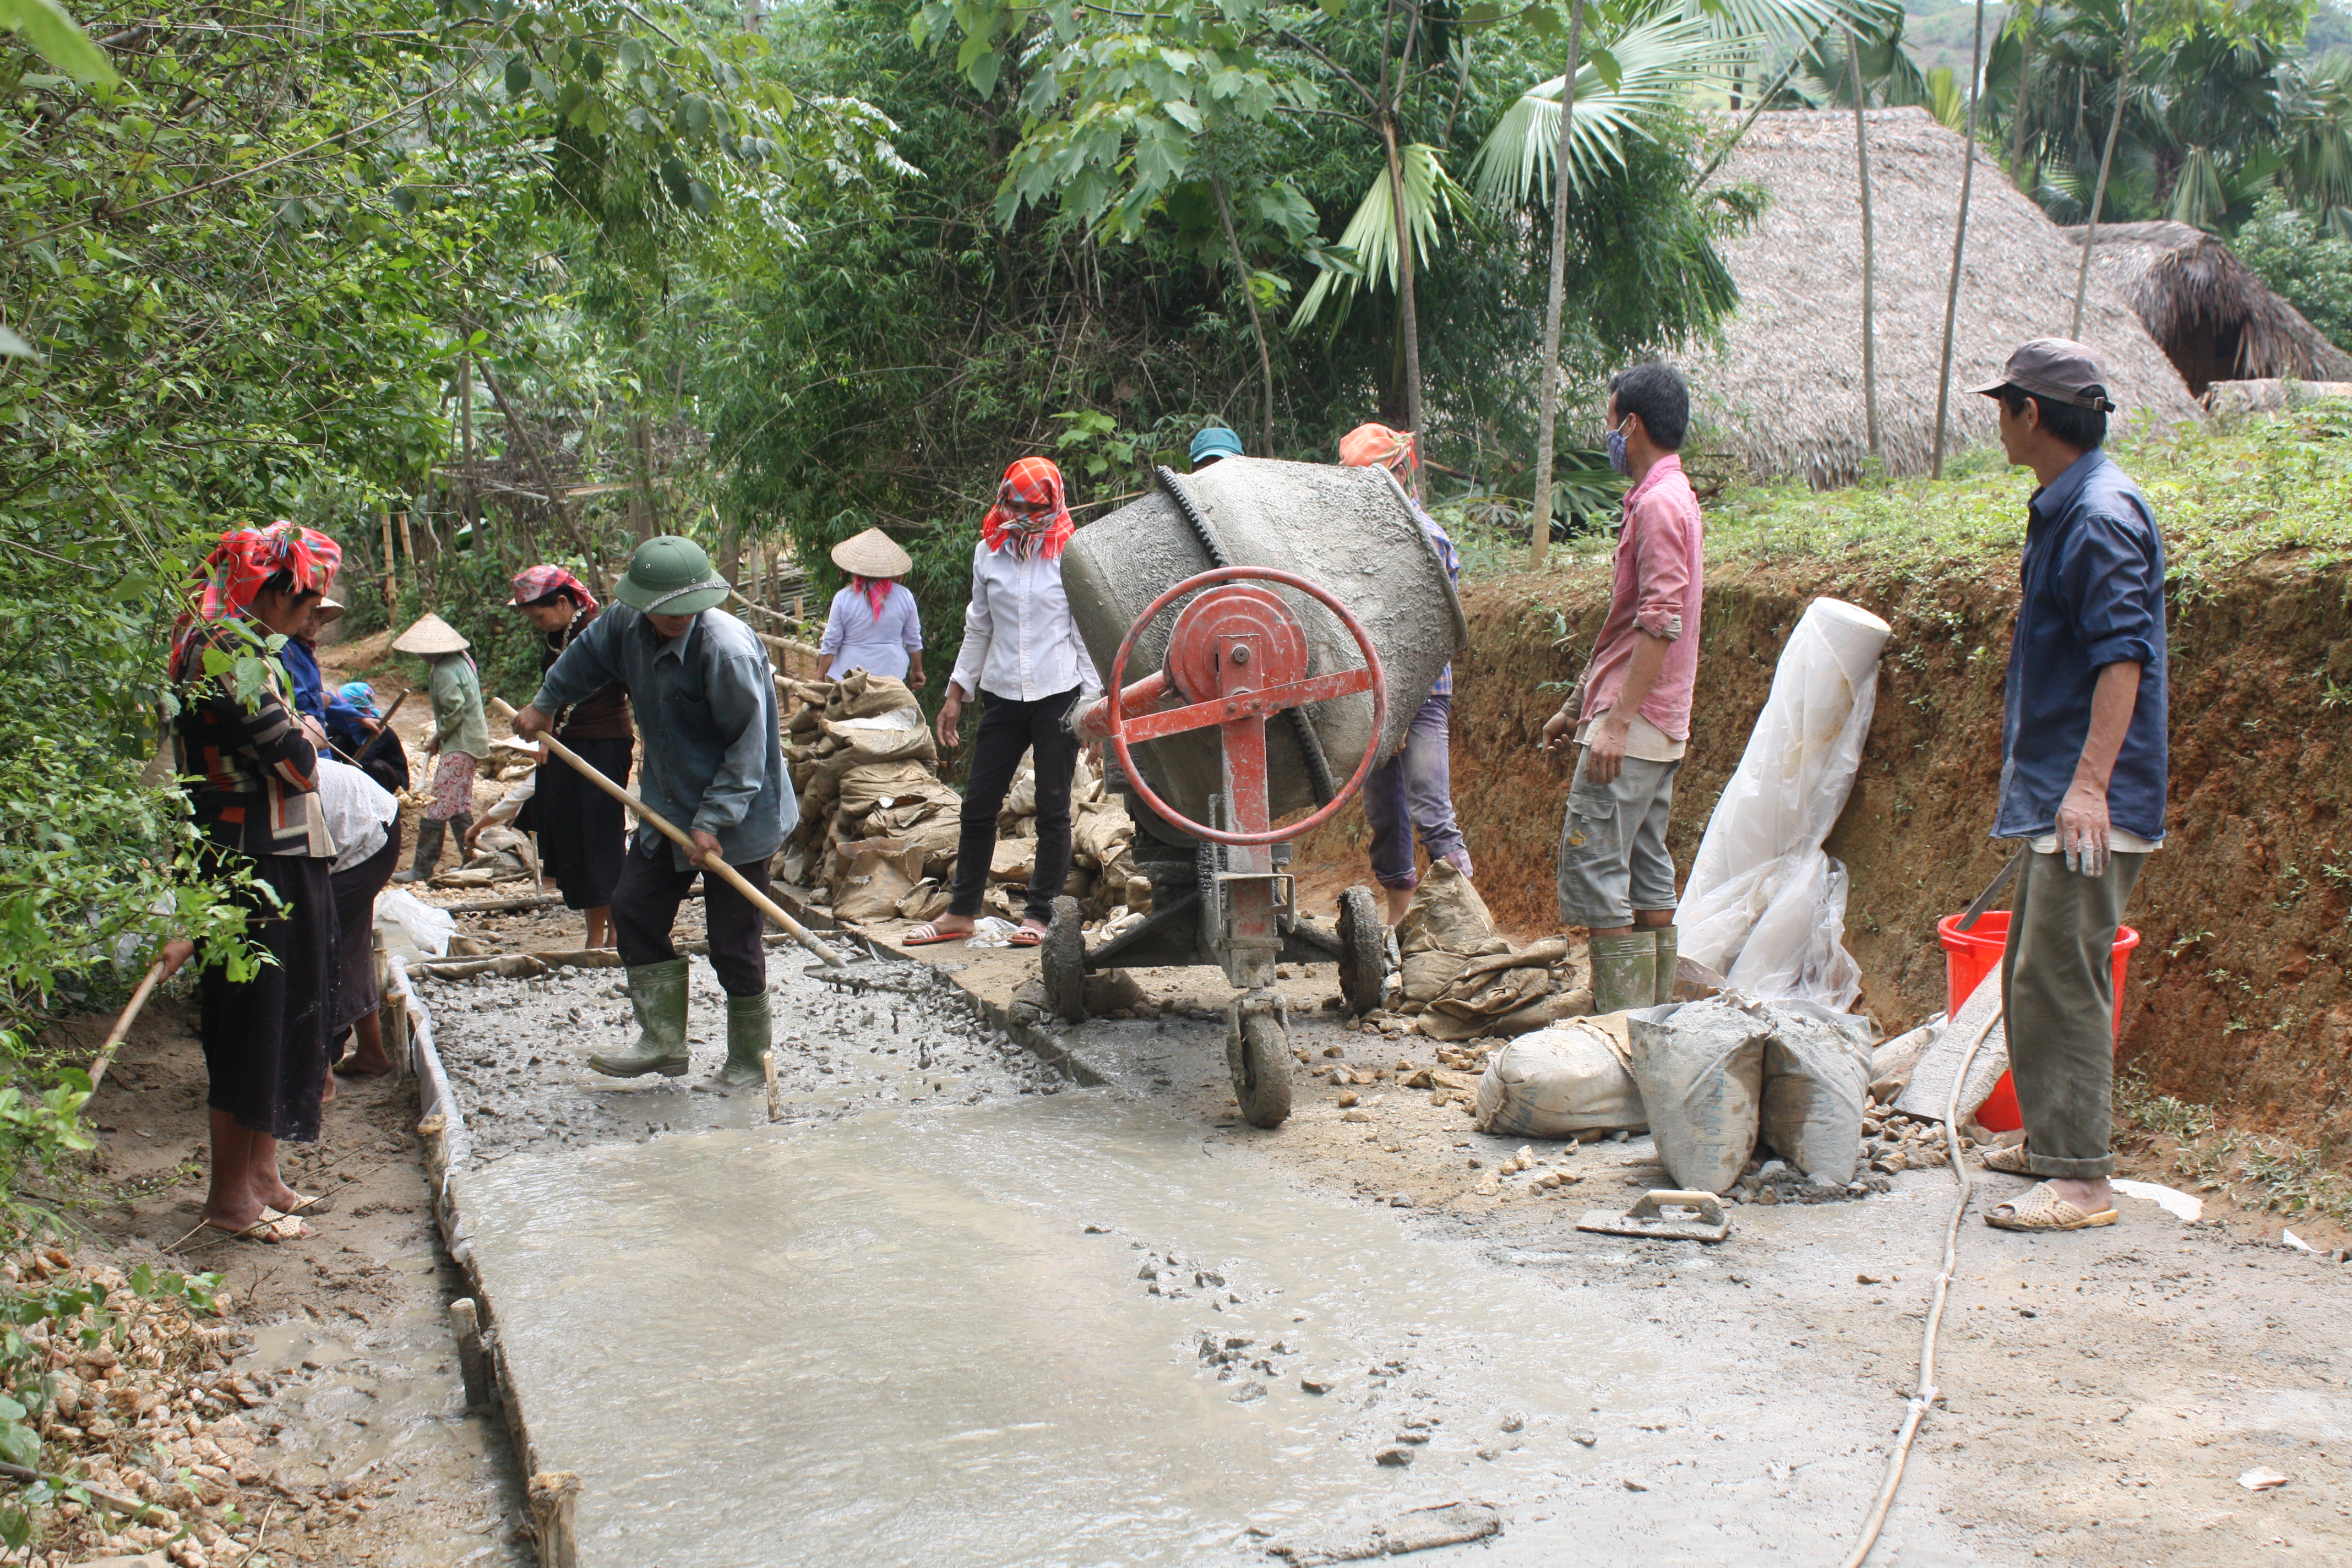  Người có uy tín cùng với bà con dân bản chung tay làm đường giao thông, xây dựng Nông thôn mới ở vùng cao Lào Cai 